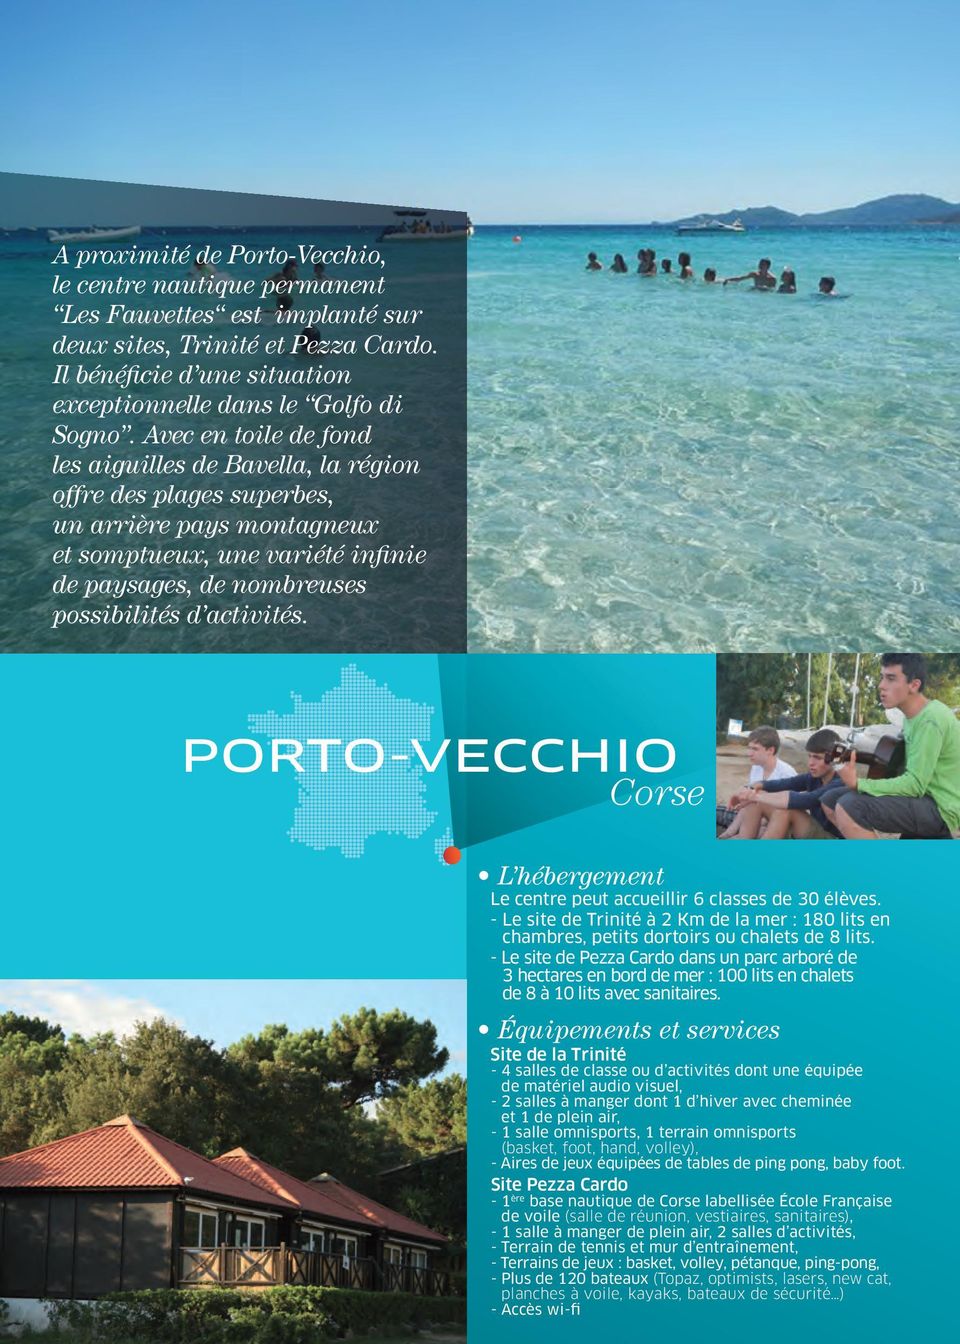 PORTO-VECCHIO Corse L hébergement Le centre peut accueillir 6 classes de 30 élèves. - Le site de Trinité à 2 Km de la mer : 180 lits en chambres, petits dortoirs ou chalets de 8 lits.